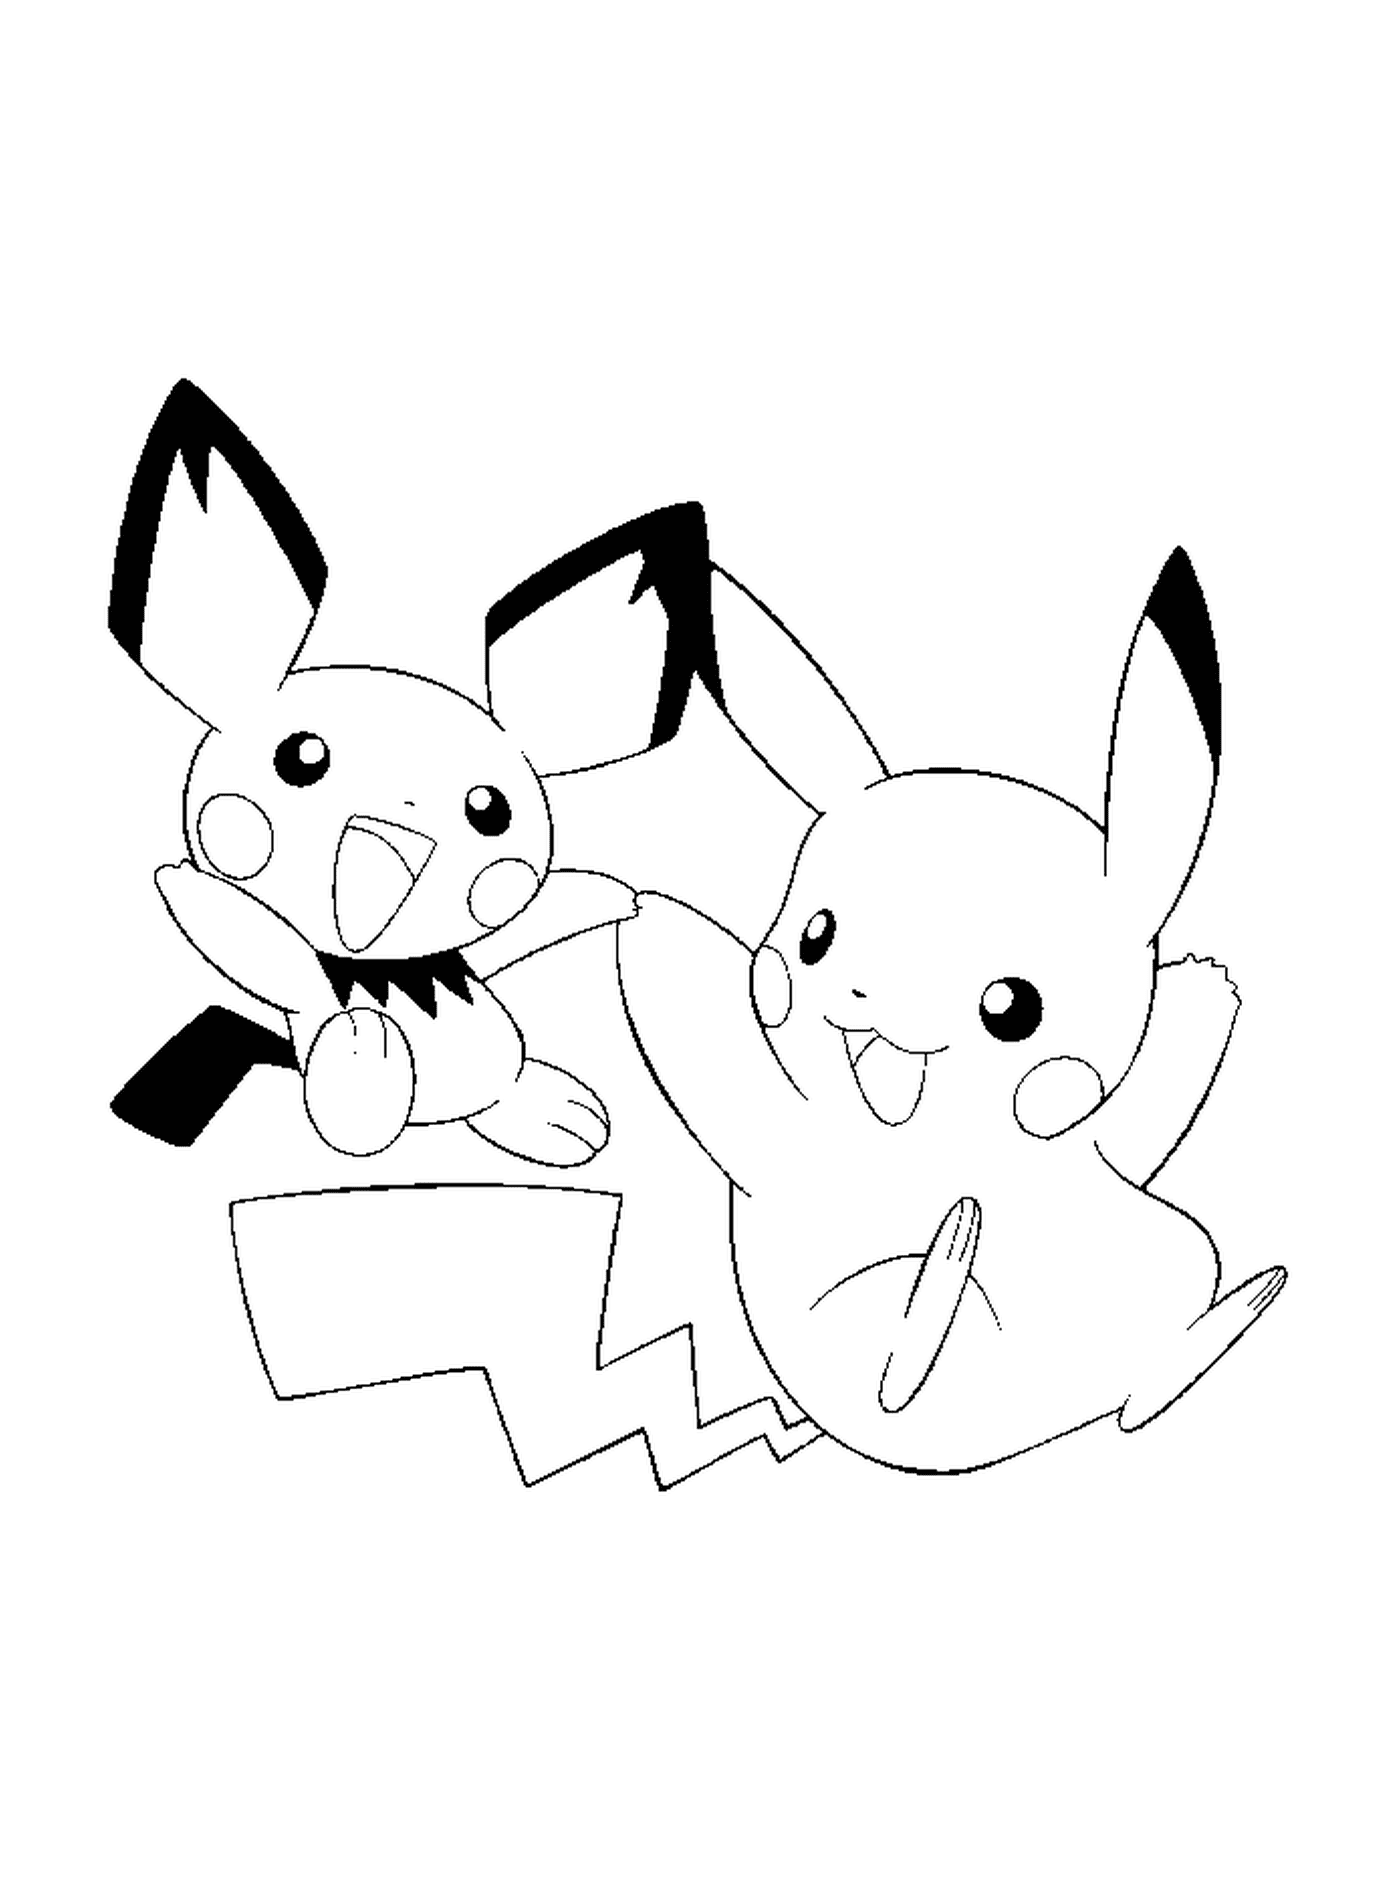  Pikachu y Pichu, amigos inseparables 